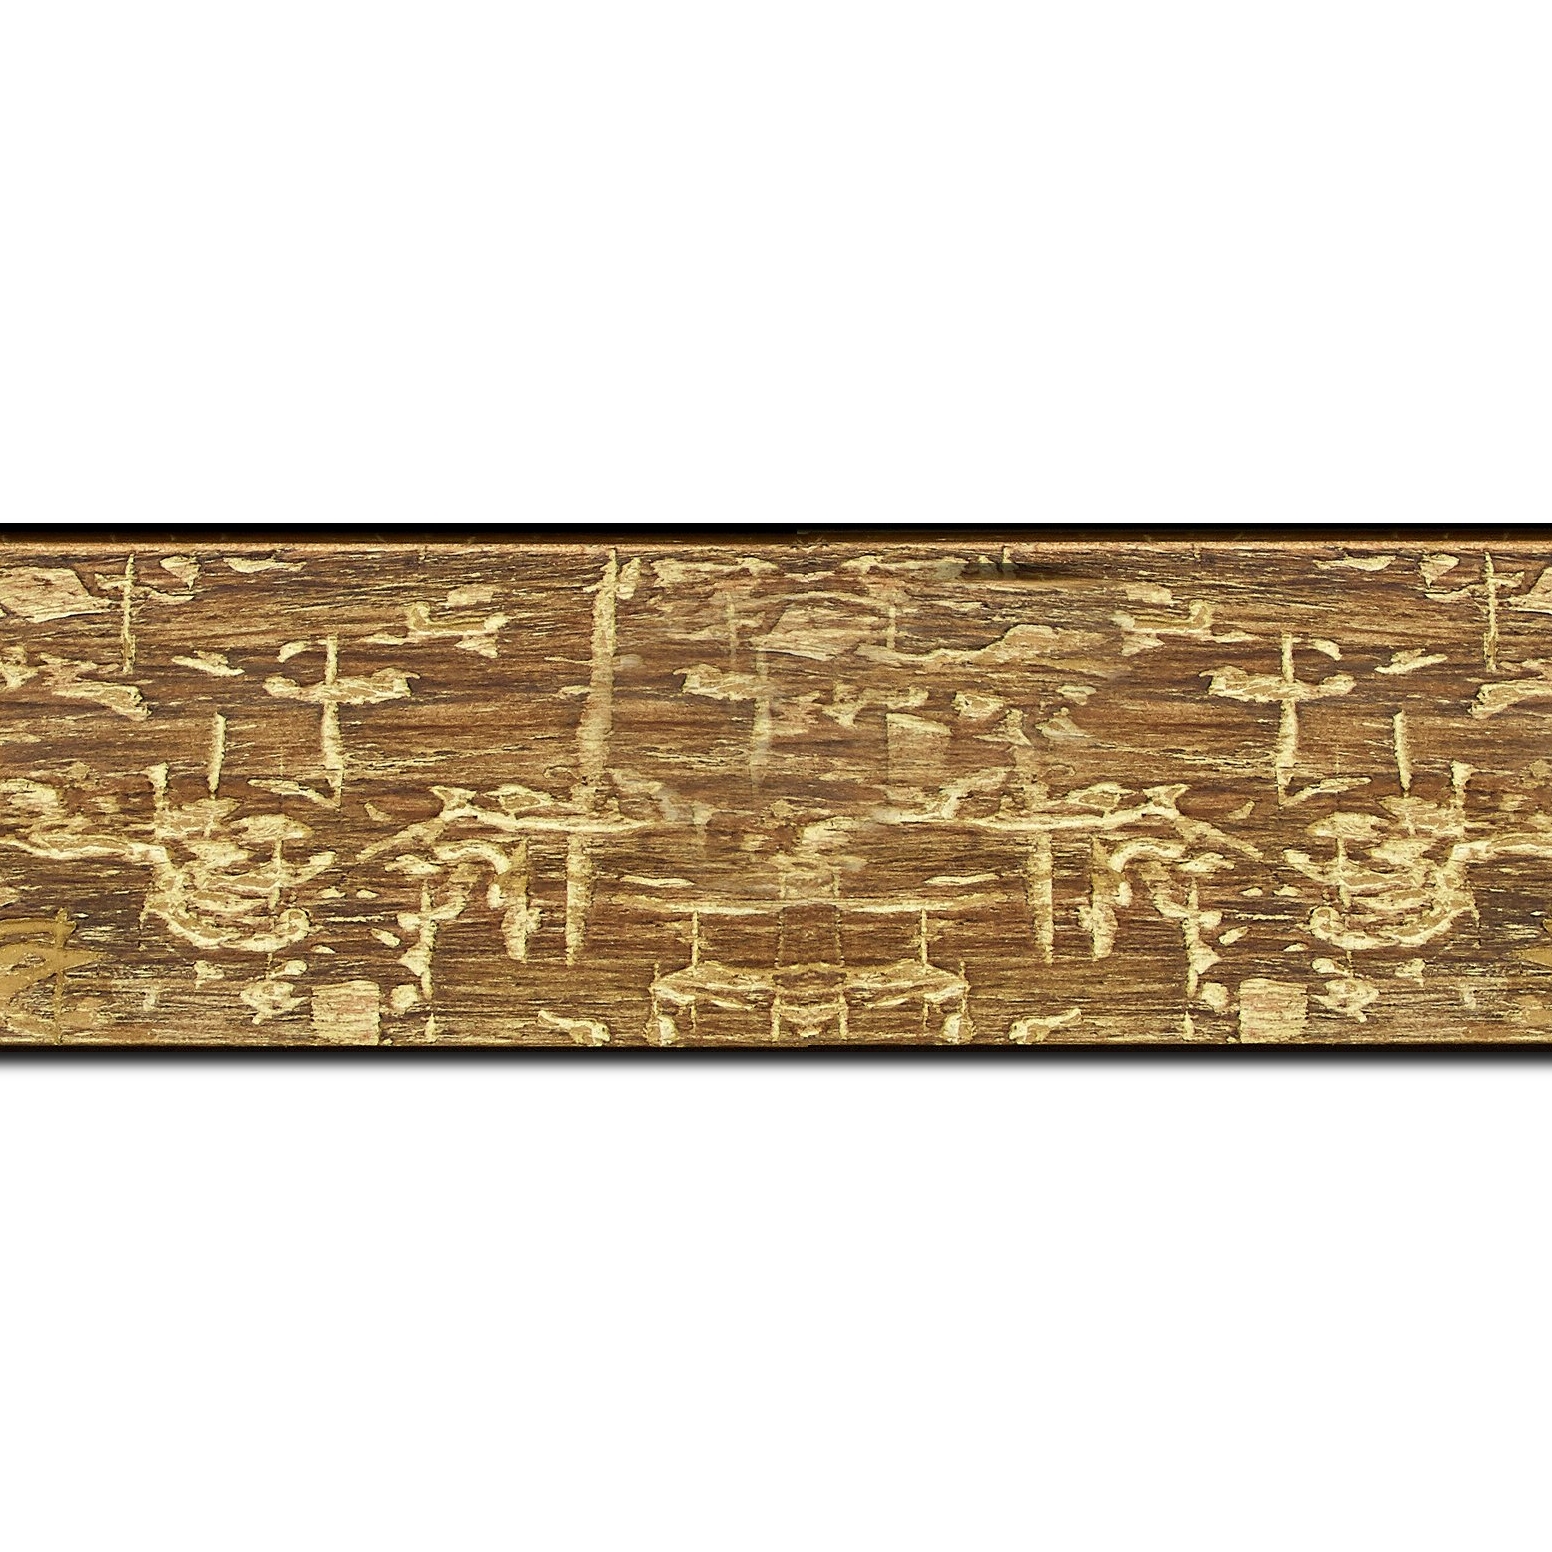 Baguette longueur 1.40m bois profil plat largeur 5cm couleur marron jauni finition bois brut aspect palette